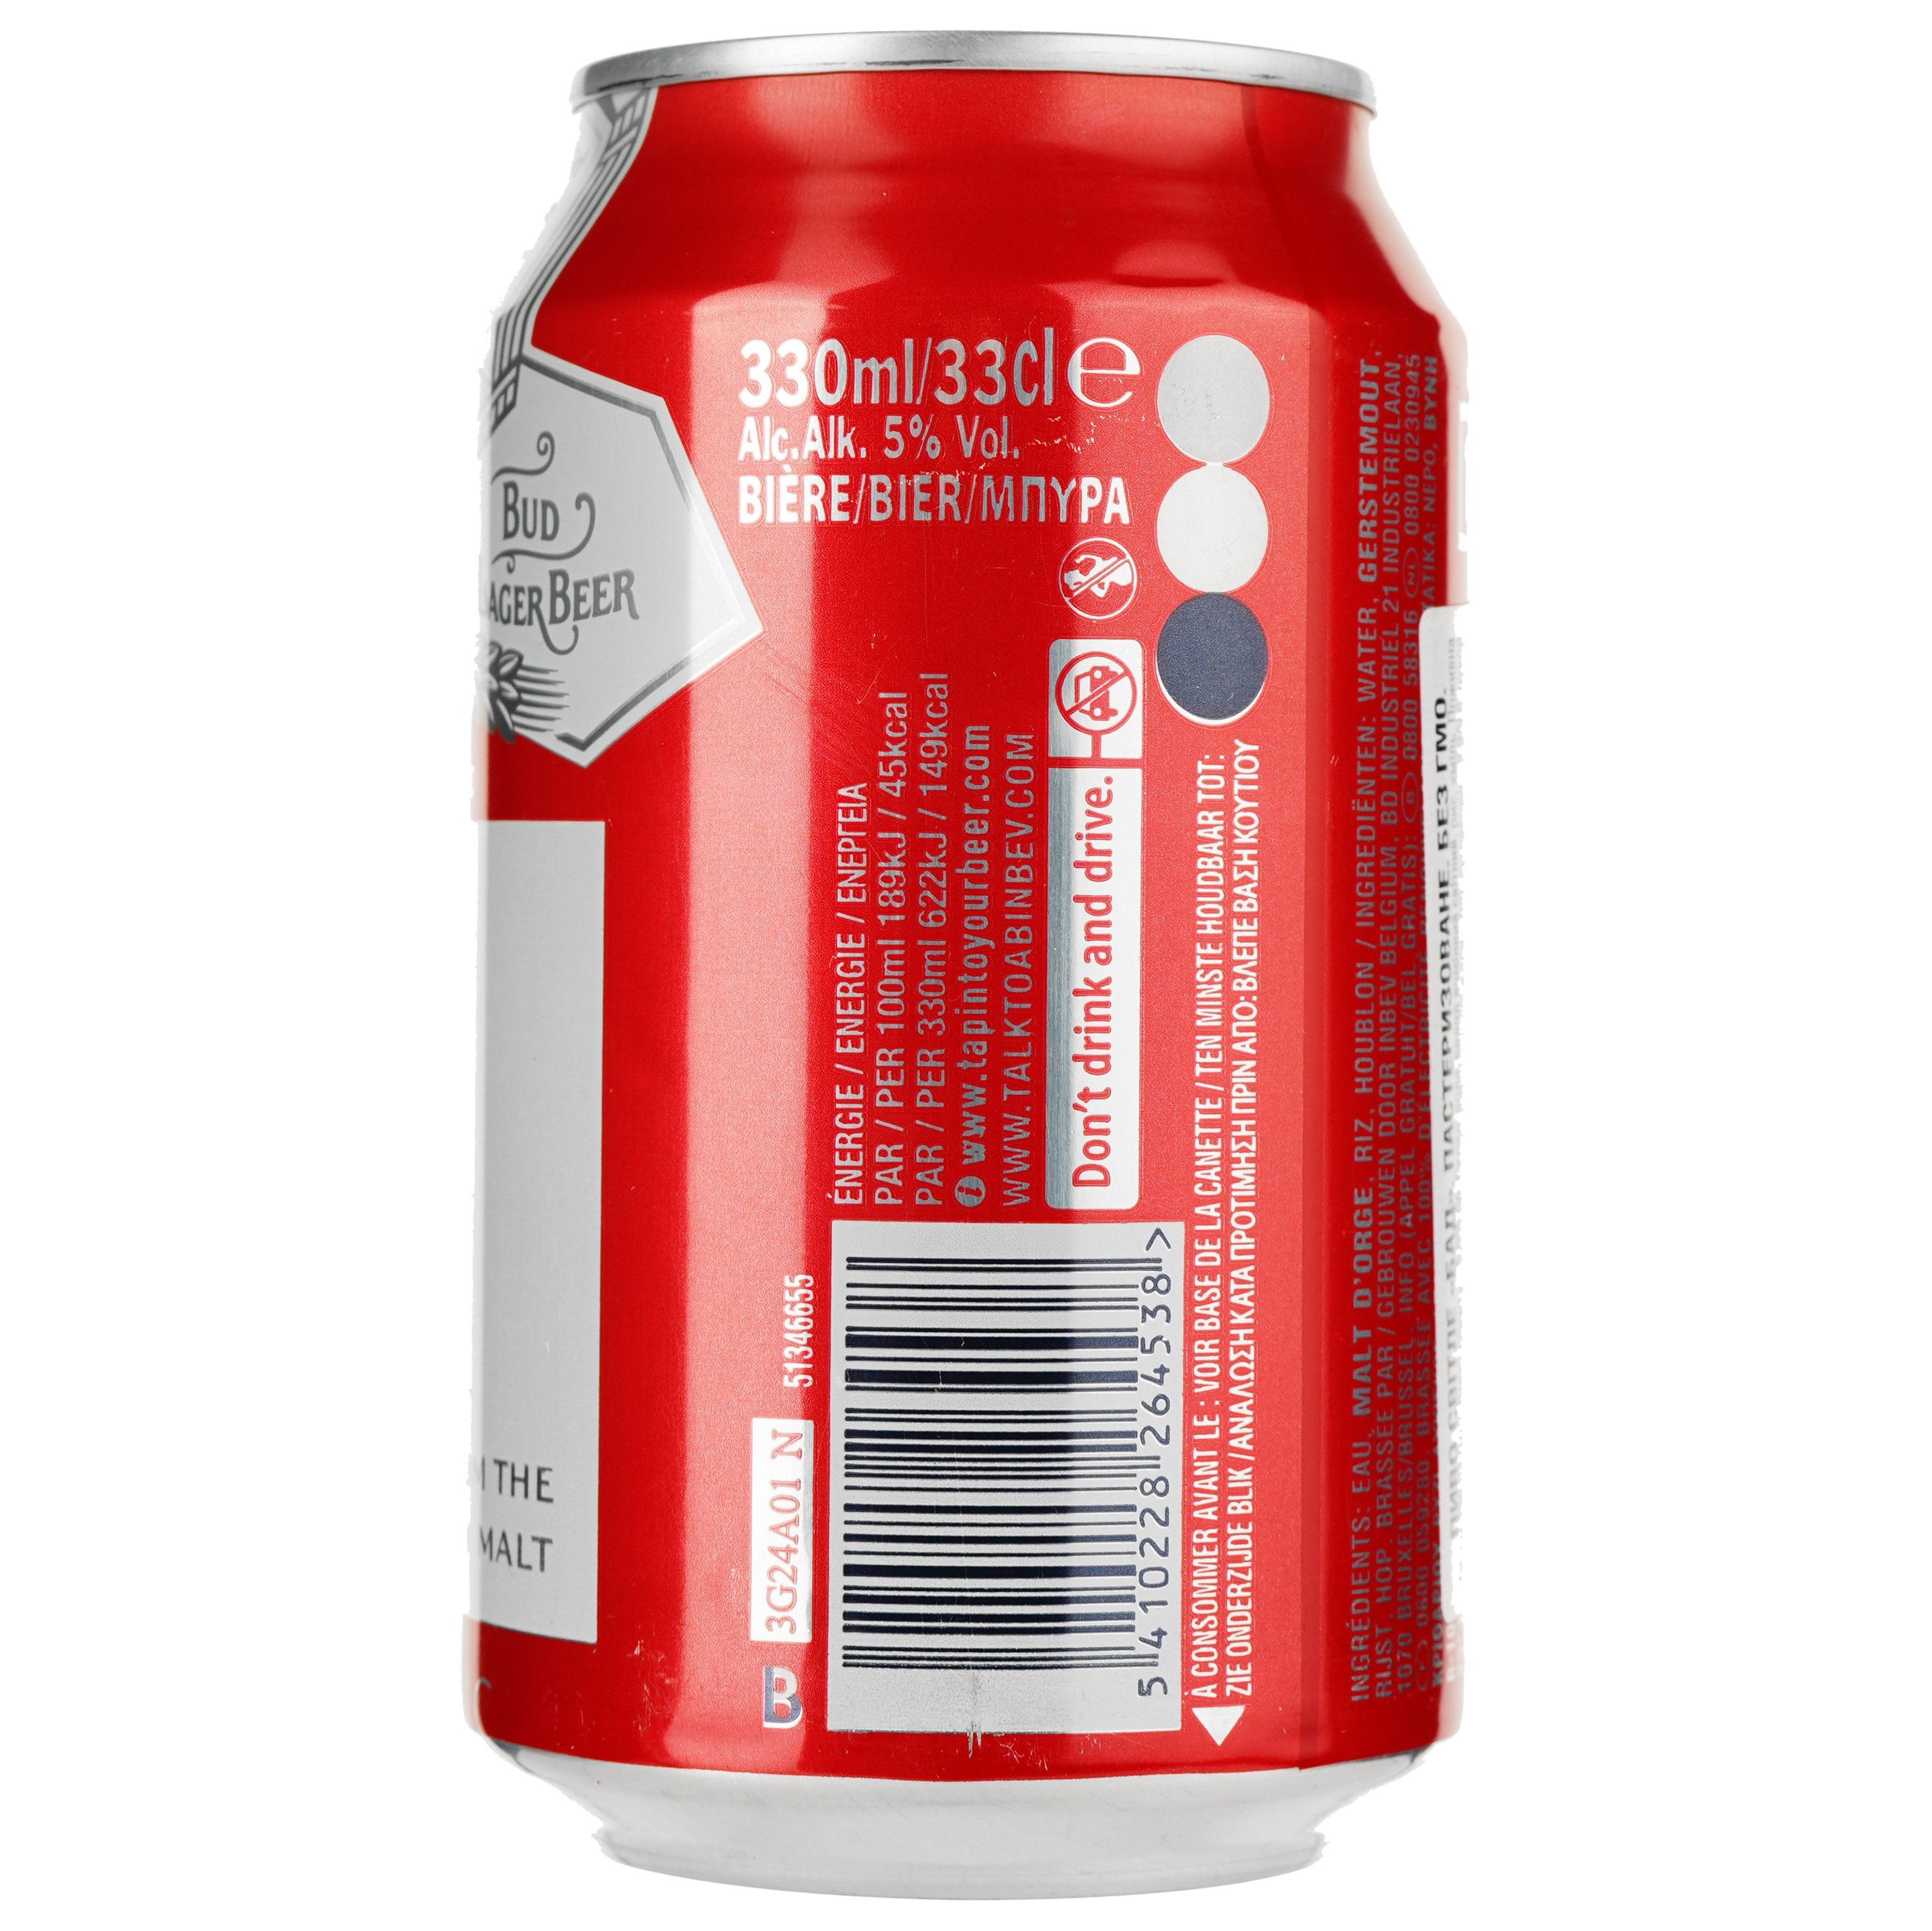 Пиво Bud, світле, 5%, з/б, 0,33 л (911489) - фото 2